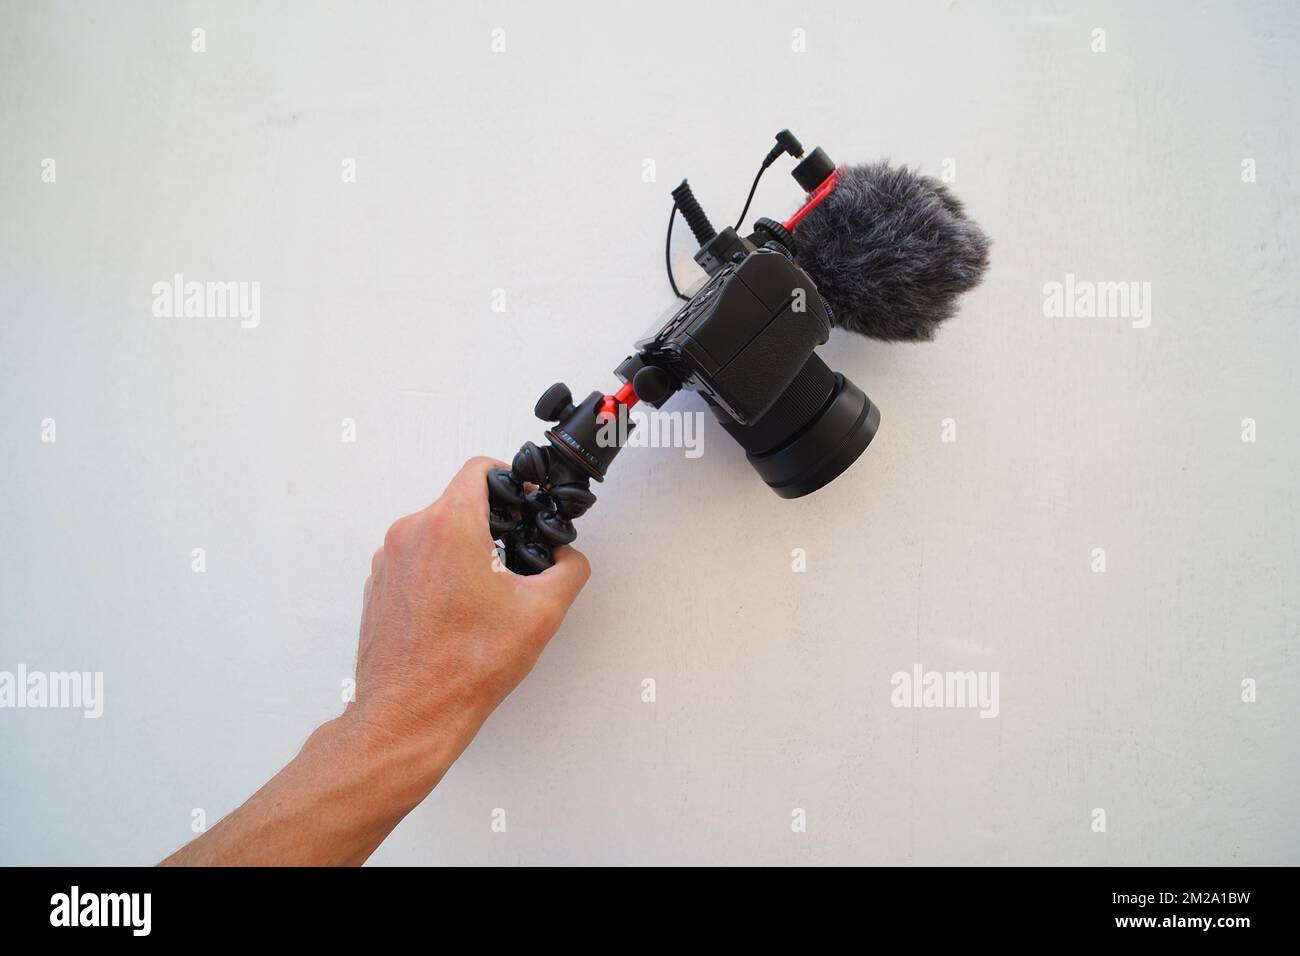 Appareil photo numérique avec microphone à portée de main. Concept Blogger. Banque D'Images